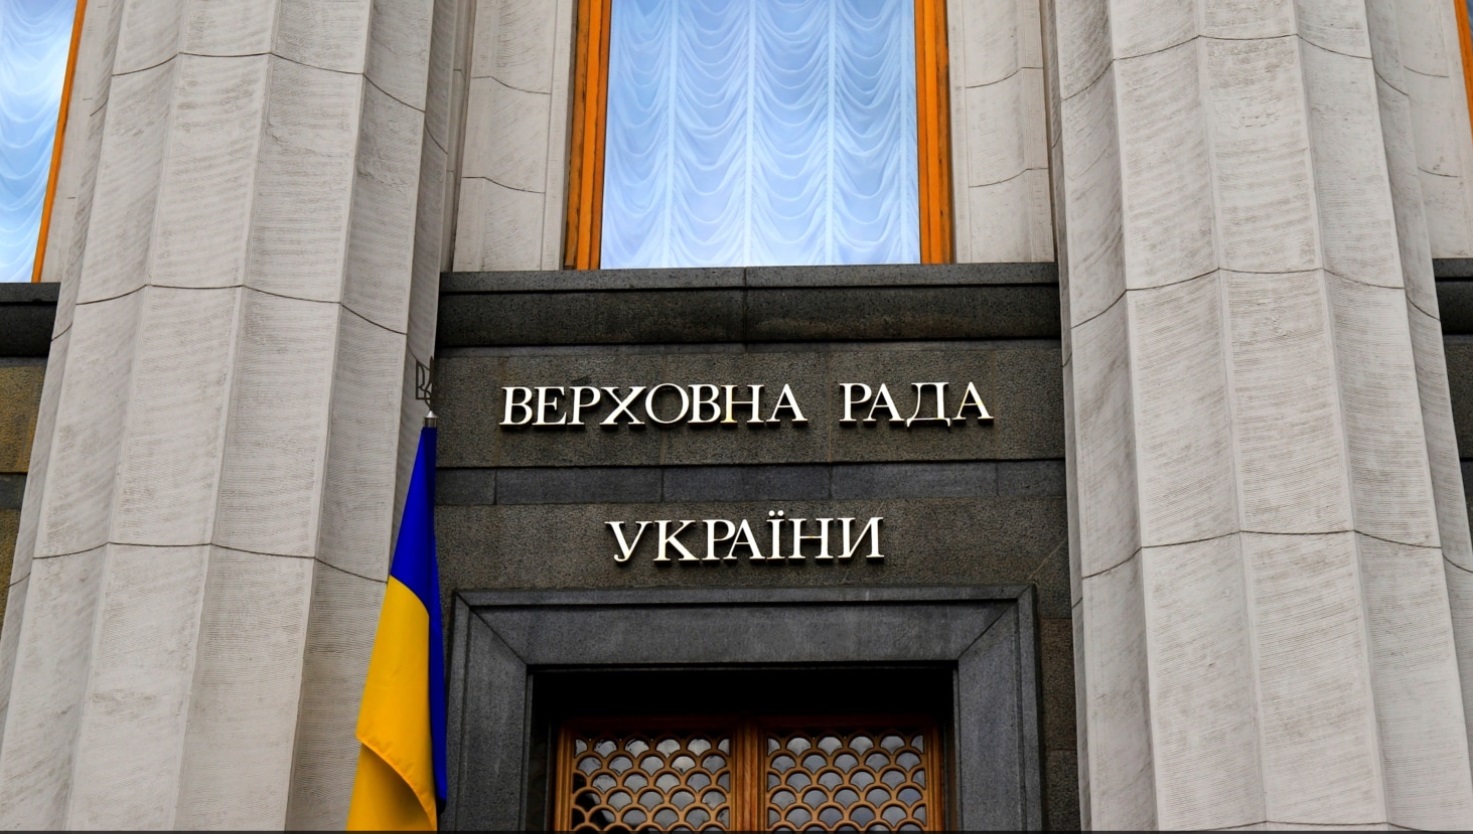 Верховная Рада запретила российскую музыку в украинских медиа и общественном пространстве